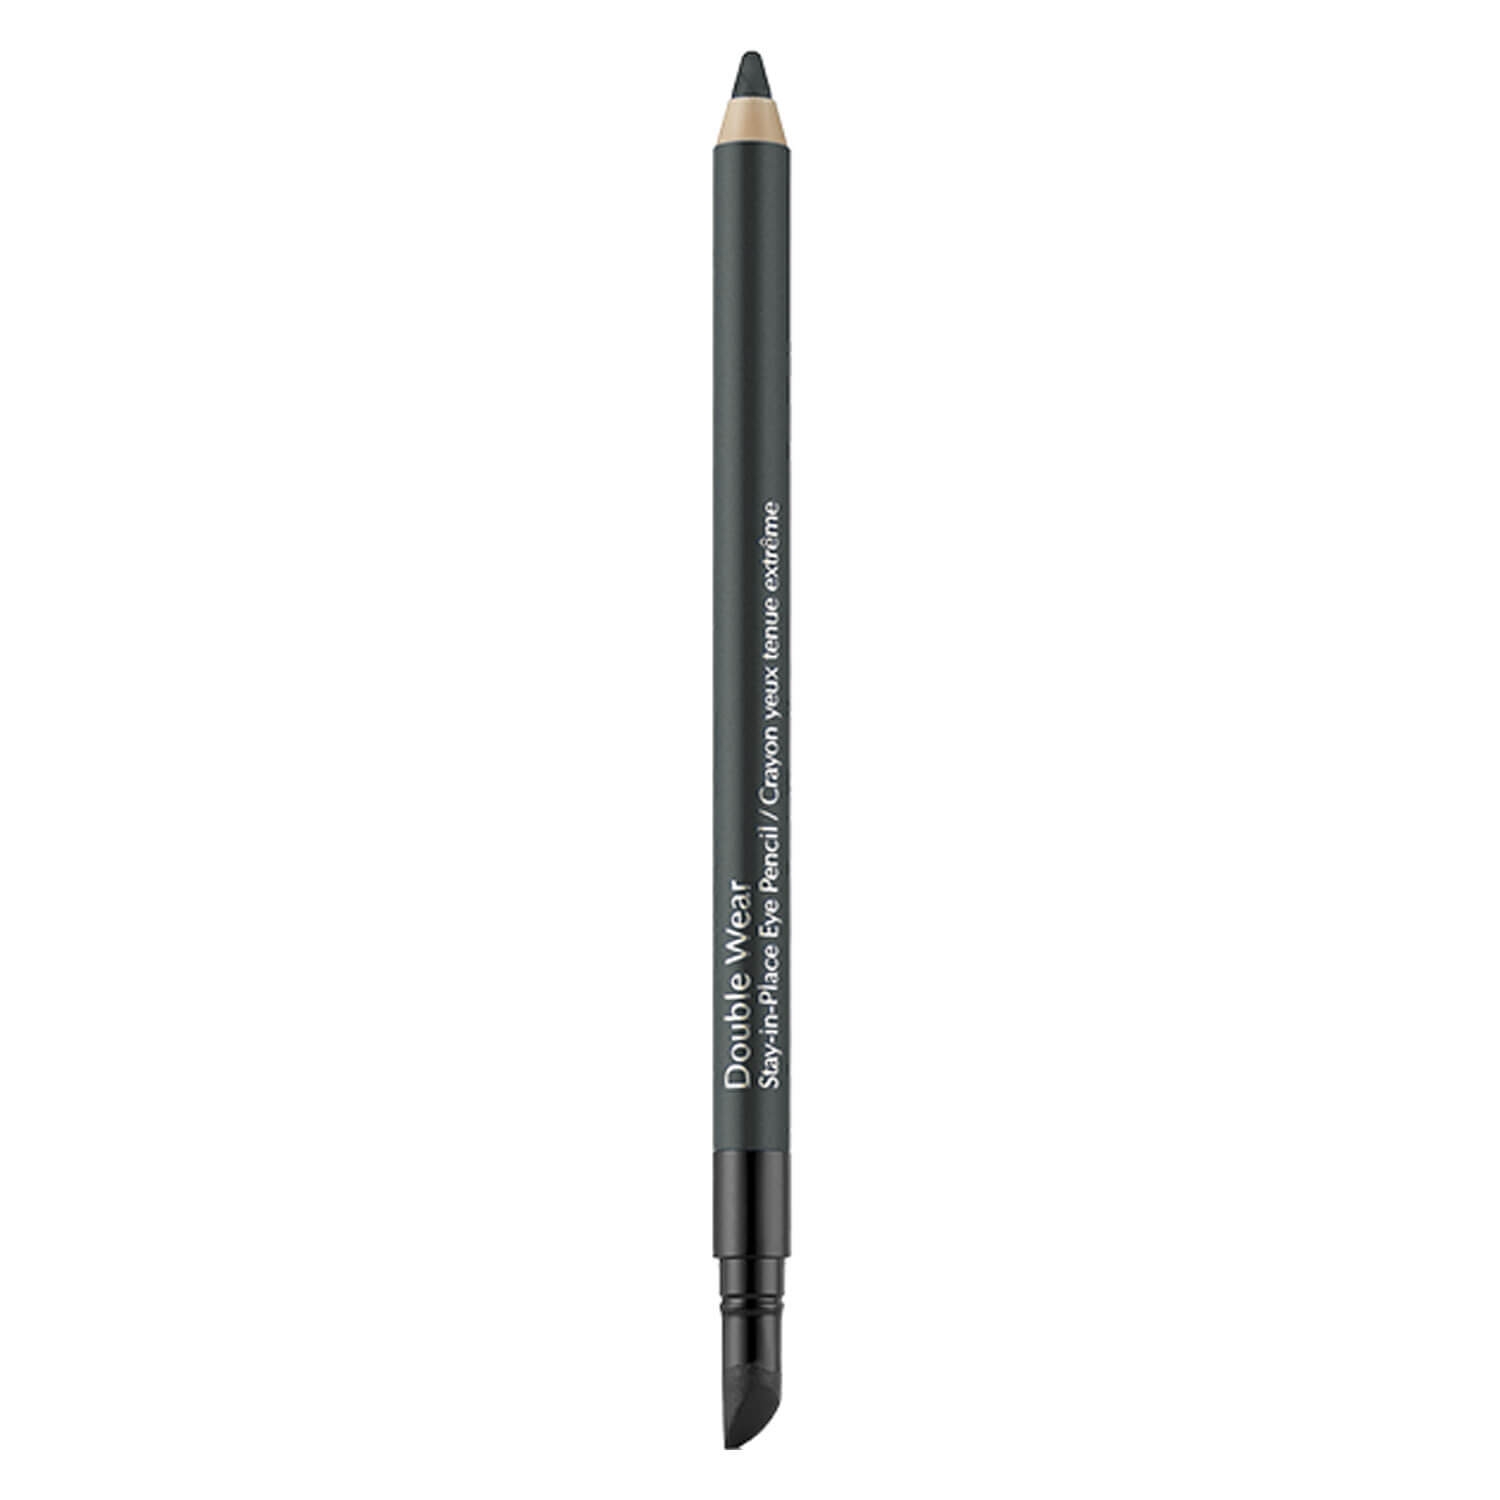 Produktbild von Double Wear - Stay-in-Place Eye Pencil Smoke